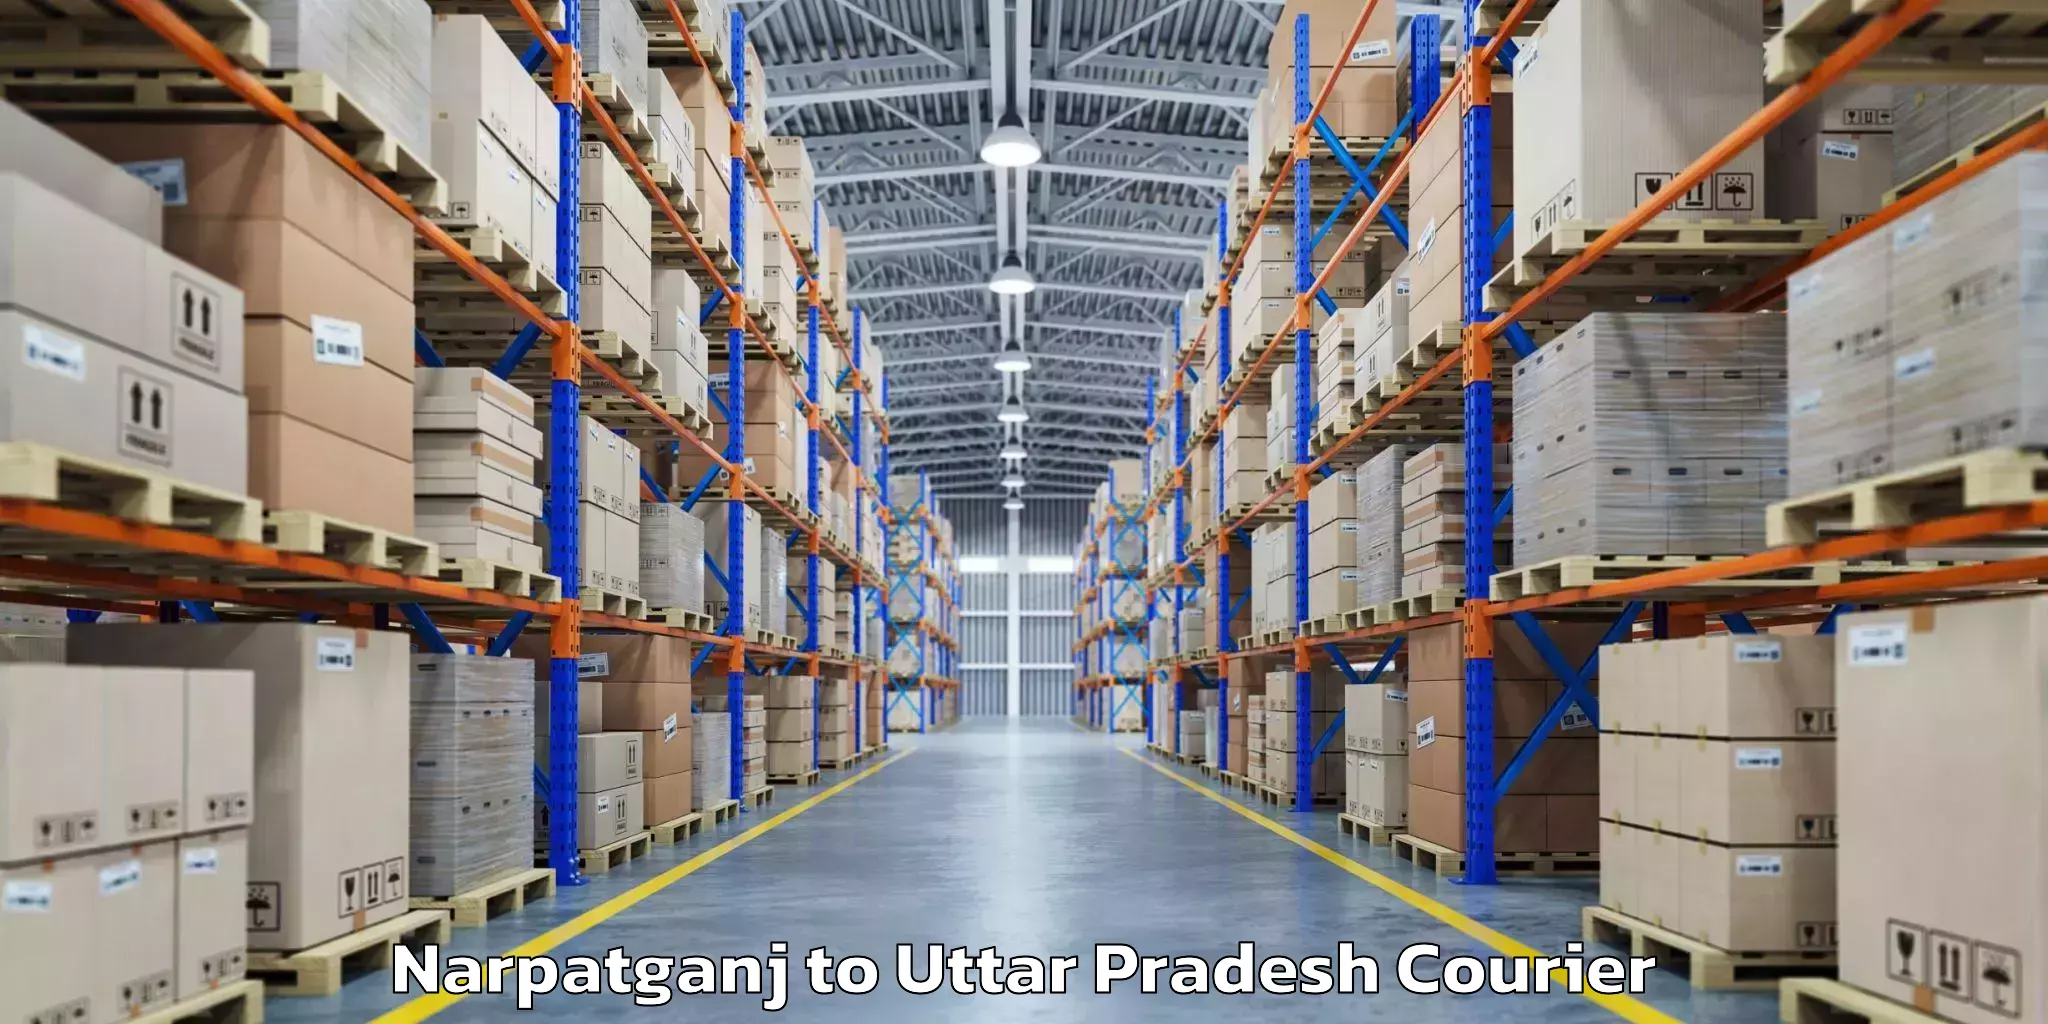 Baggage shipping experts Narpatganj to Uttar Pradesh